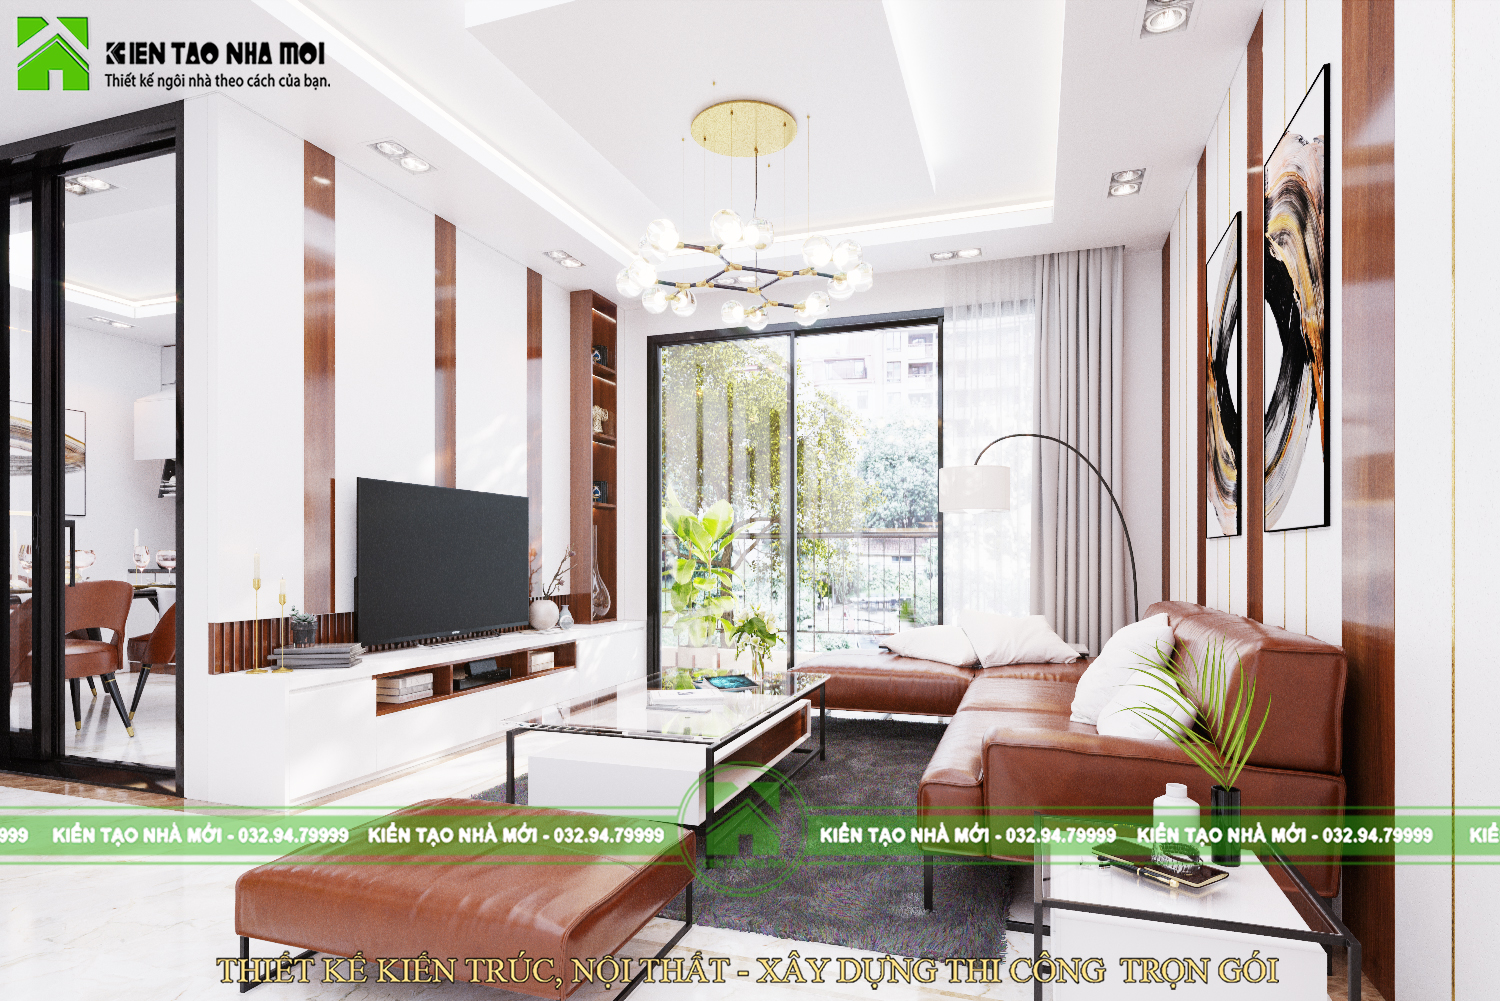 Thiết kế nội thất Biệt Thự tại Thái Nguyên Thiết kế nội thất nhà ở gia đình hiện đại tại Thái Nguyên 1587915120 0